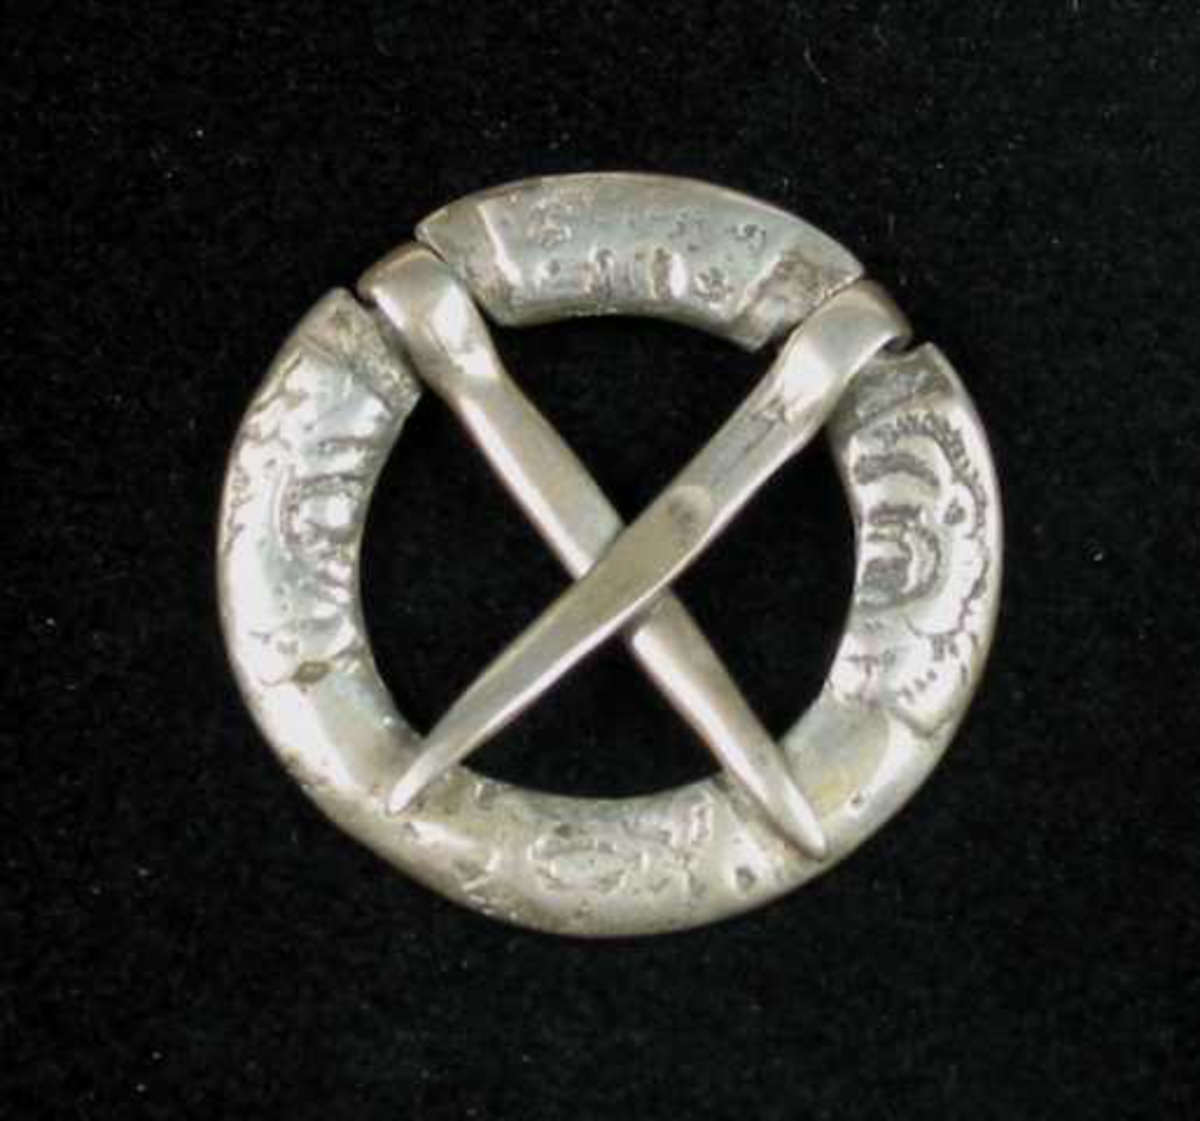 Lita bursprette av sølv. Den har to løse torner stilt i kors. Ringen er delt i fire felter, men dekoren er utydelig på grunn av slitasje. Det kan minne om et rosemotiv.